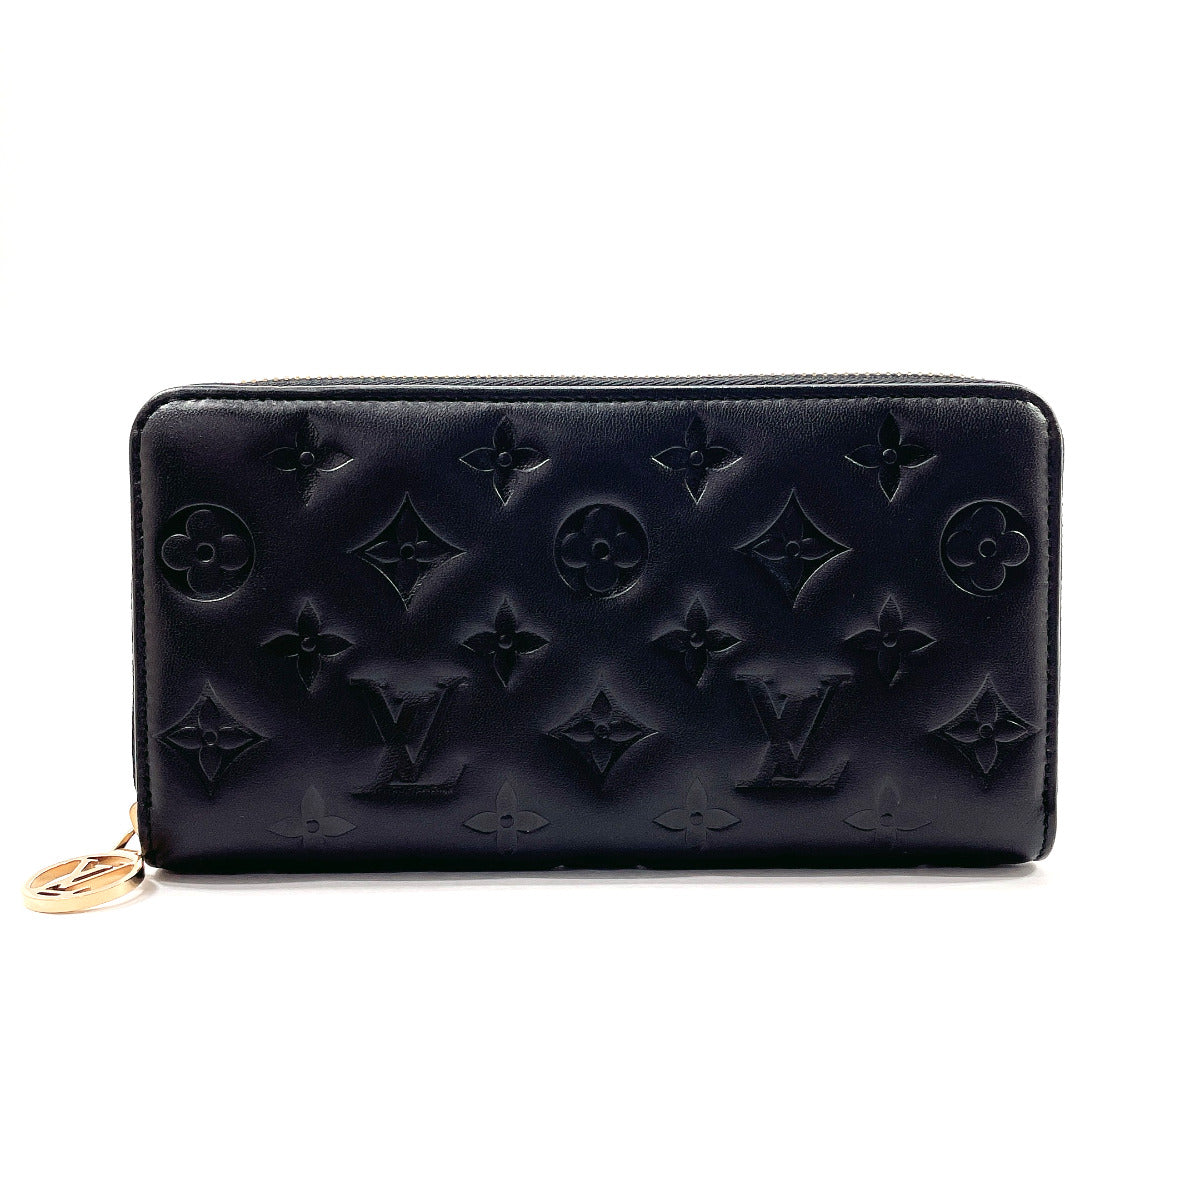 Louis Vuitton Zippy Vernis Wallet Full Set Black Patent leather